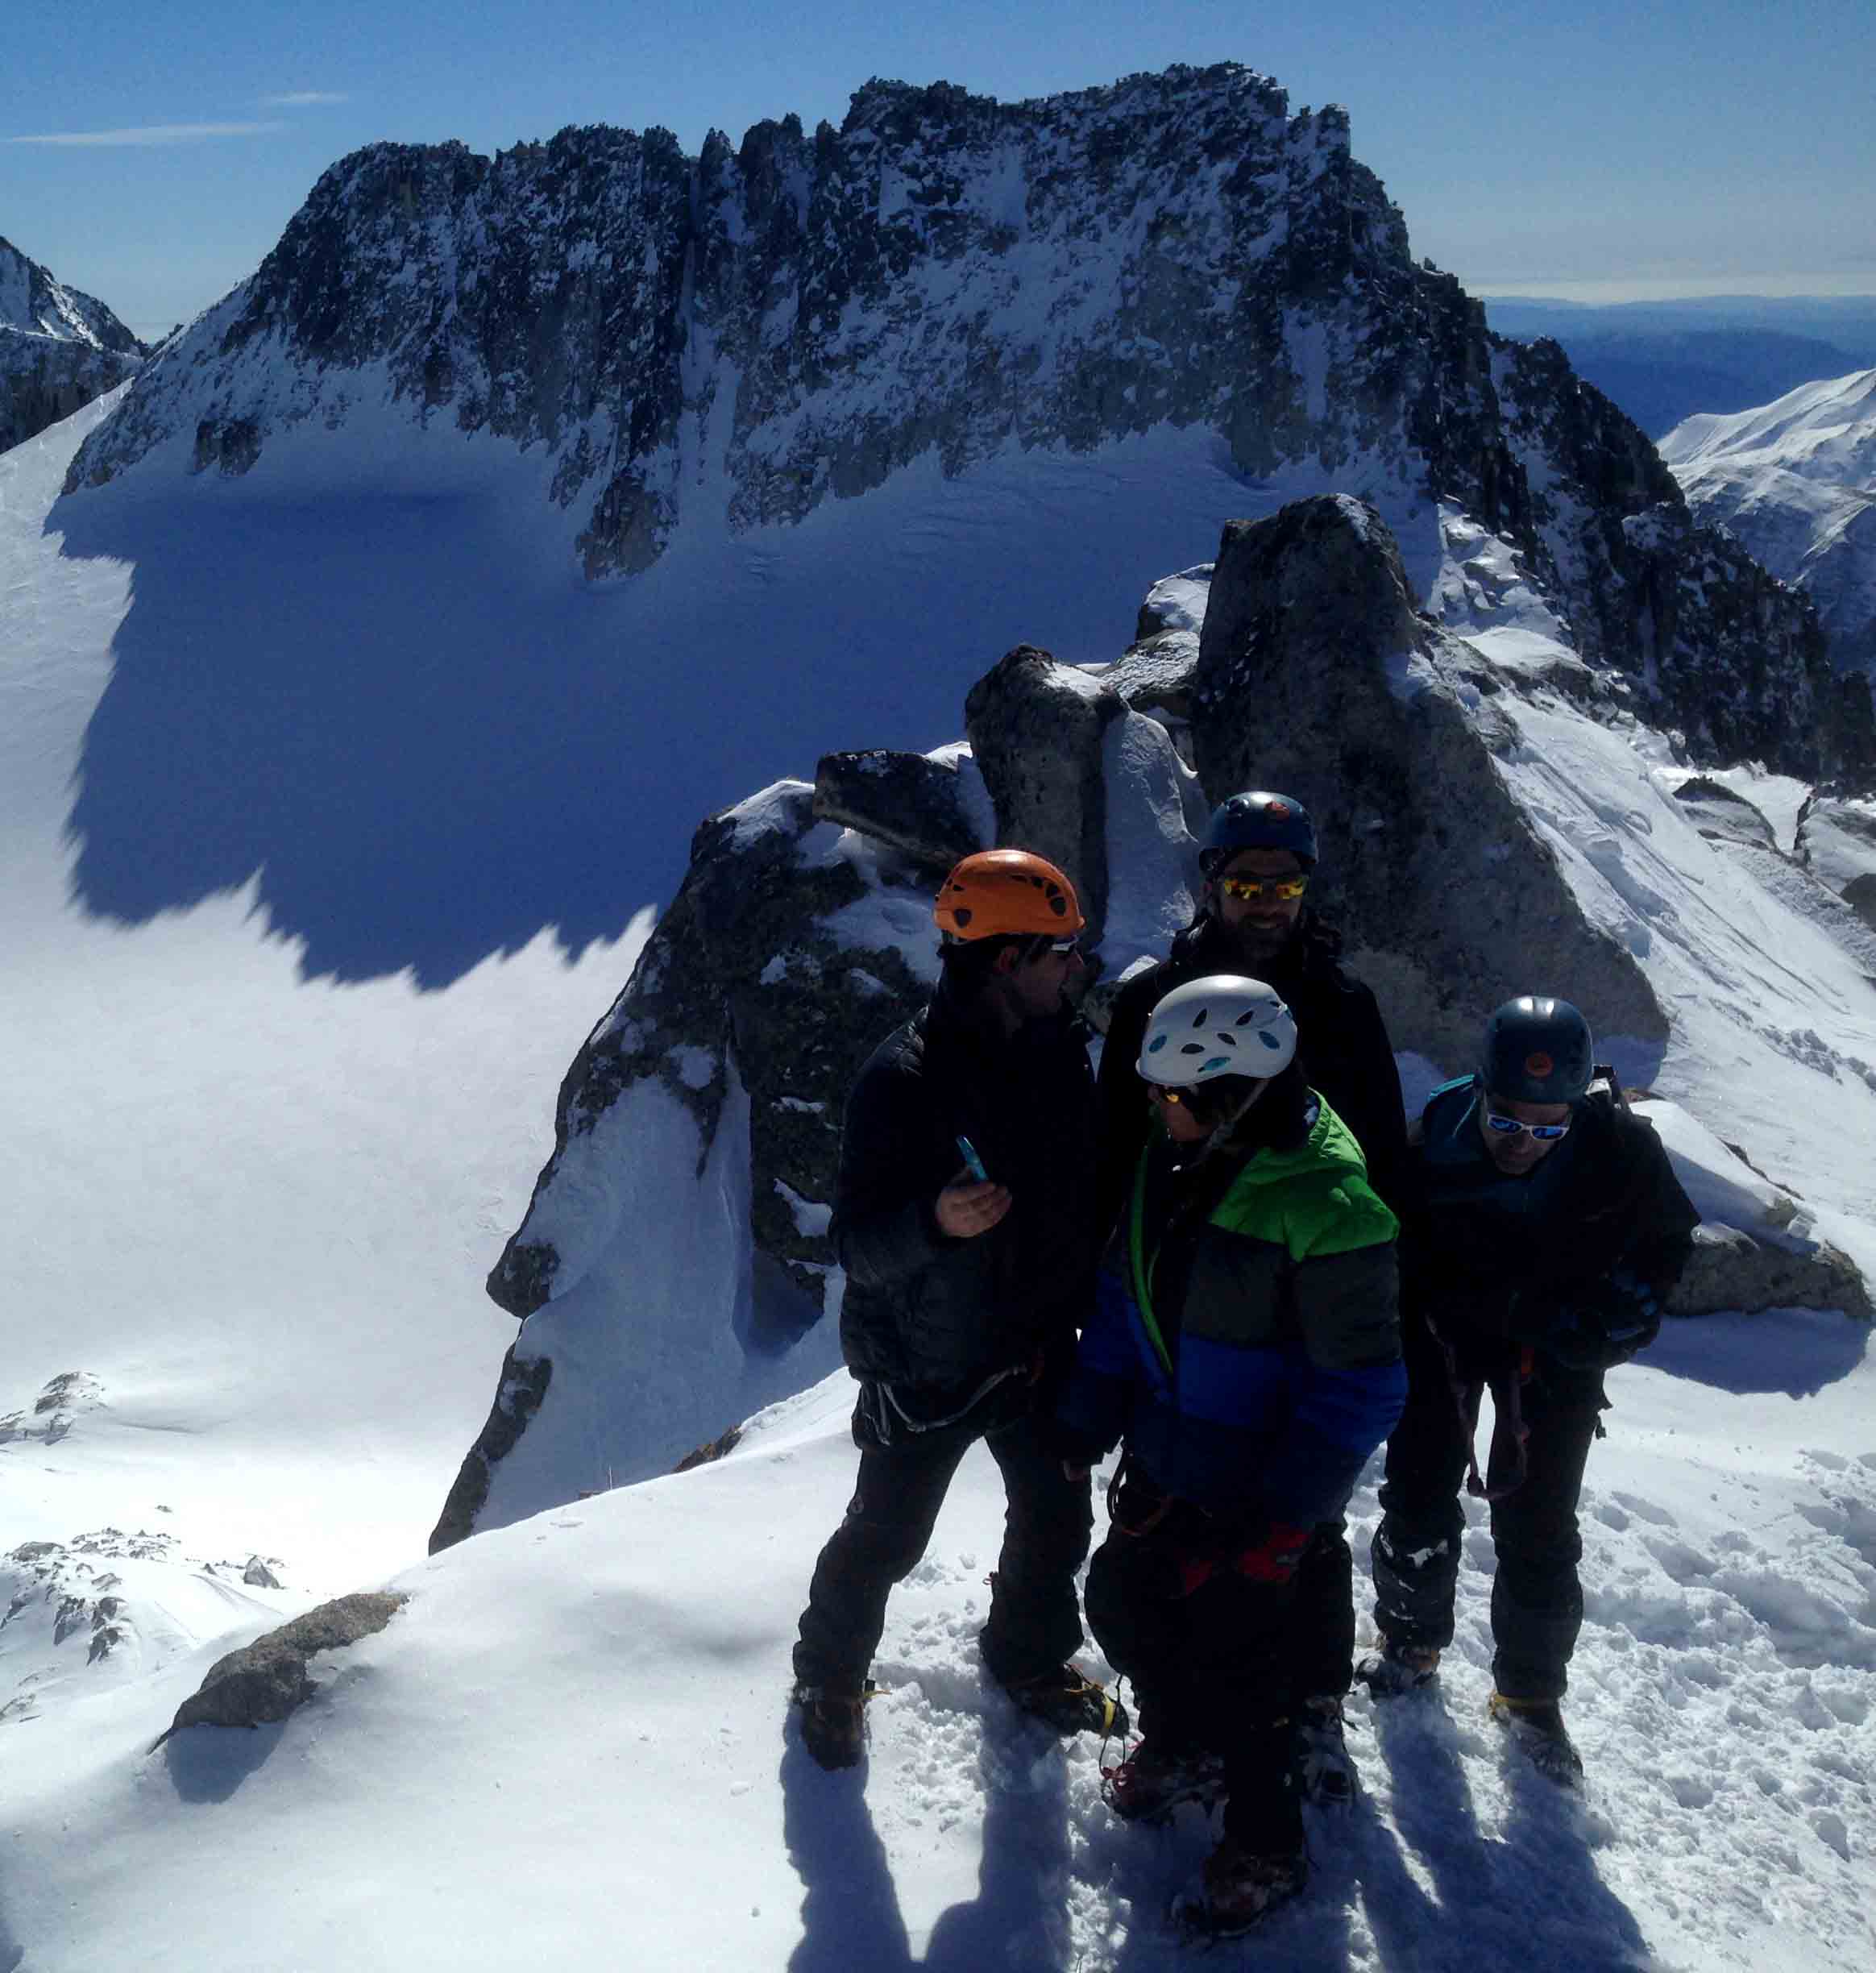 Verdulero lote hierro Cursos de Alpinismo - Guías de Torla Ordesa - Guías de montaña